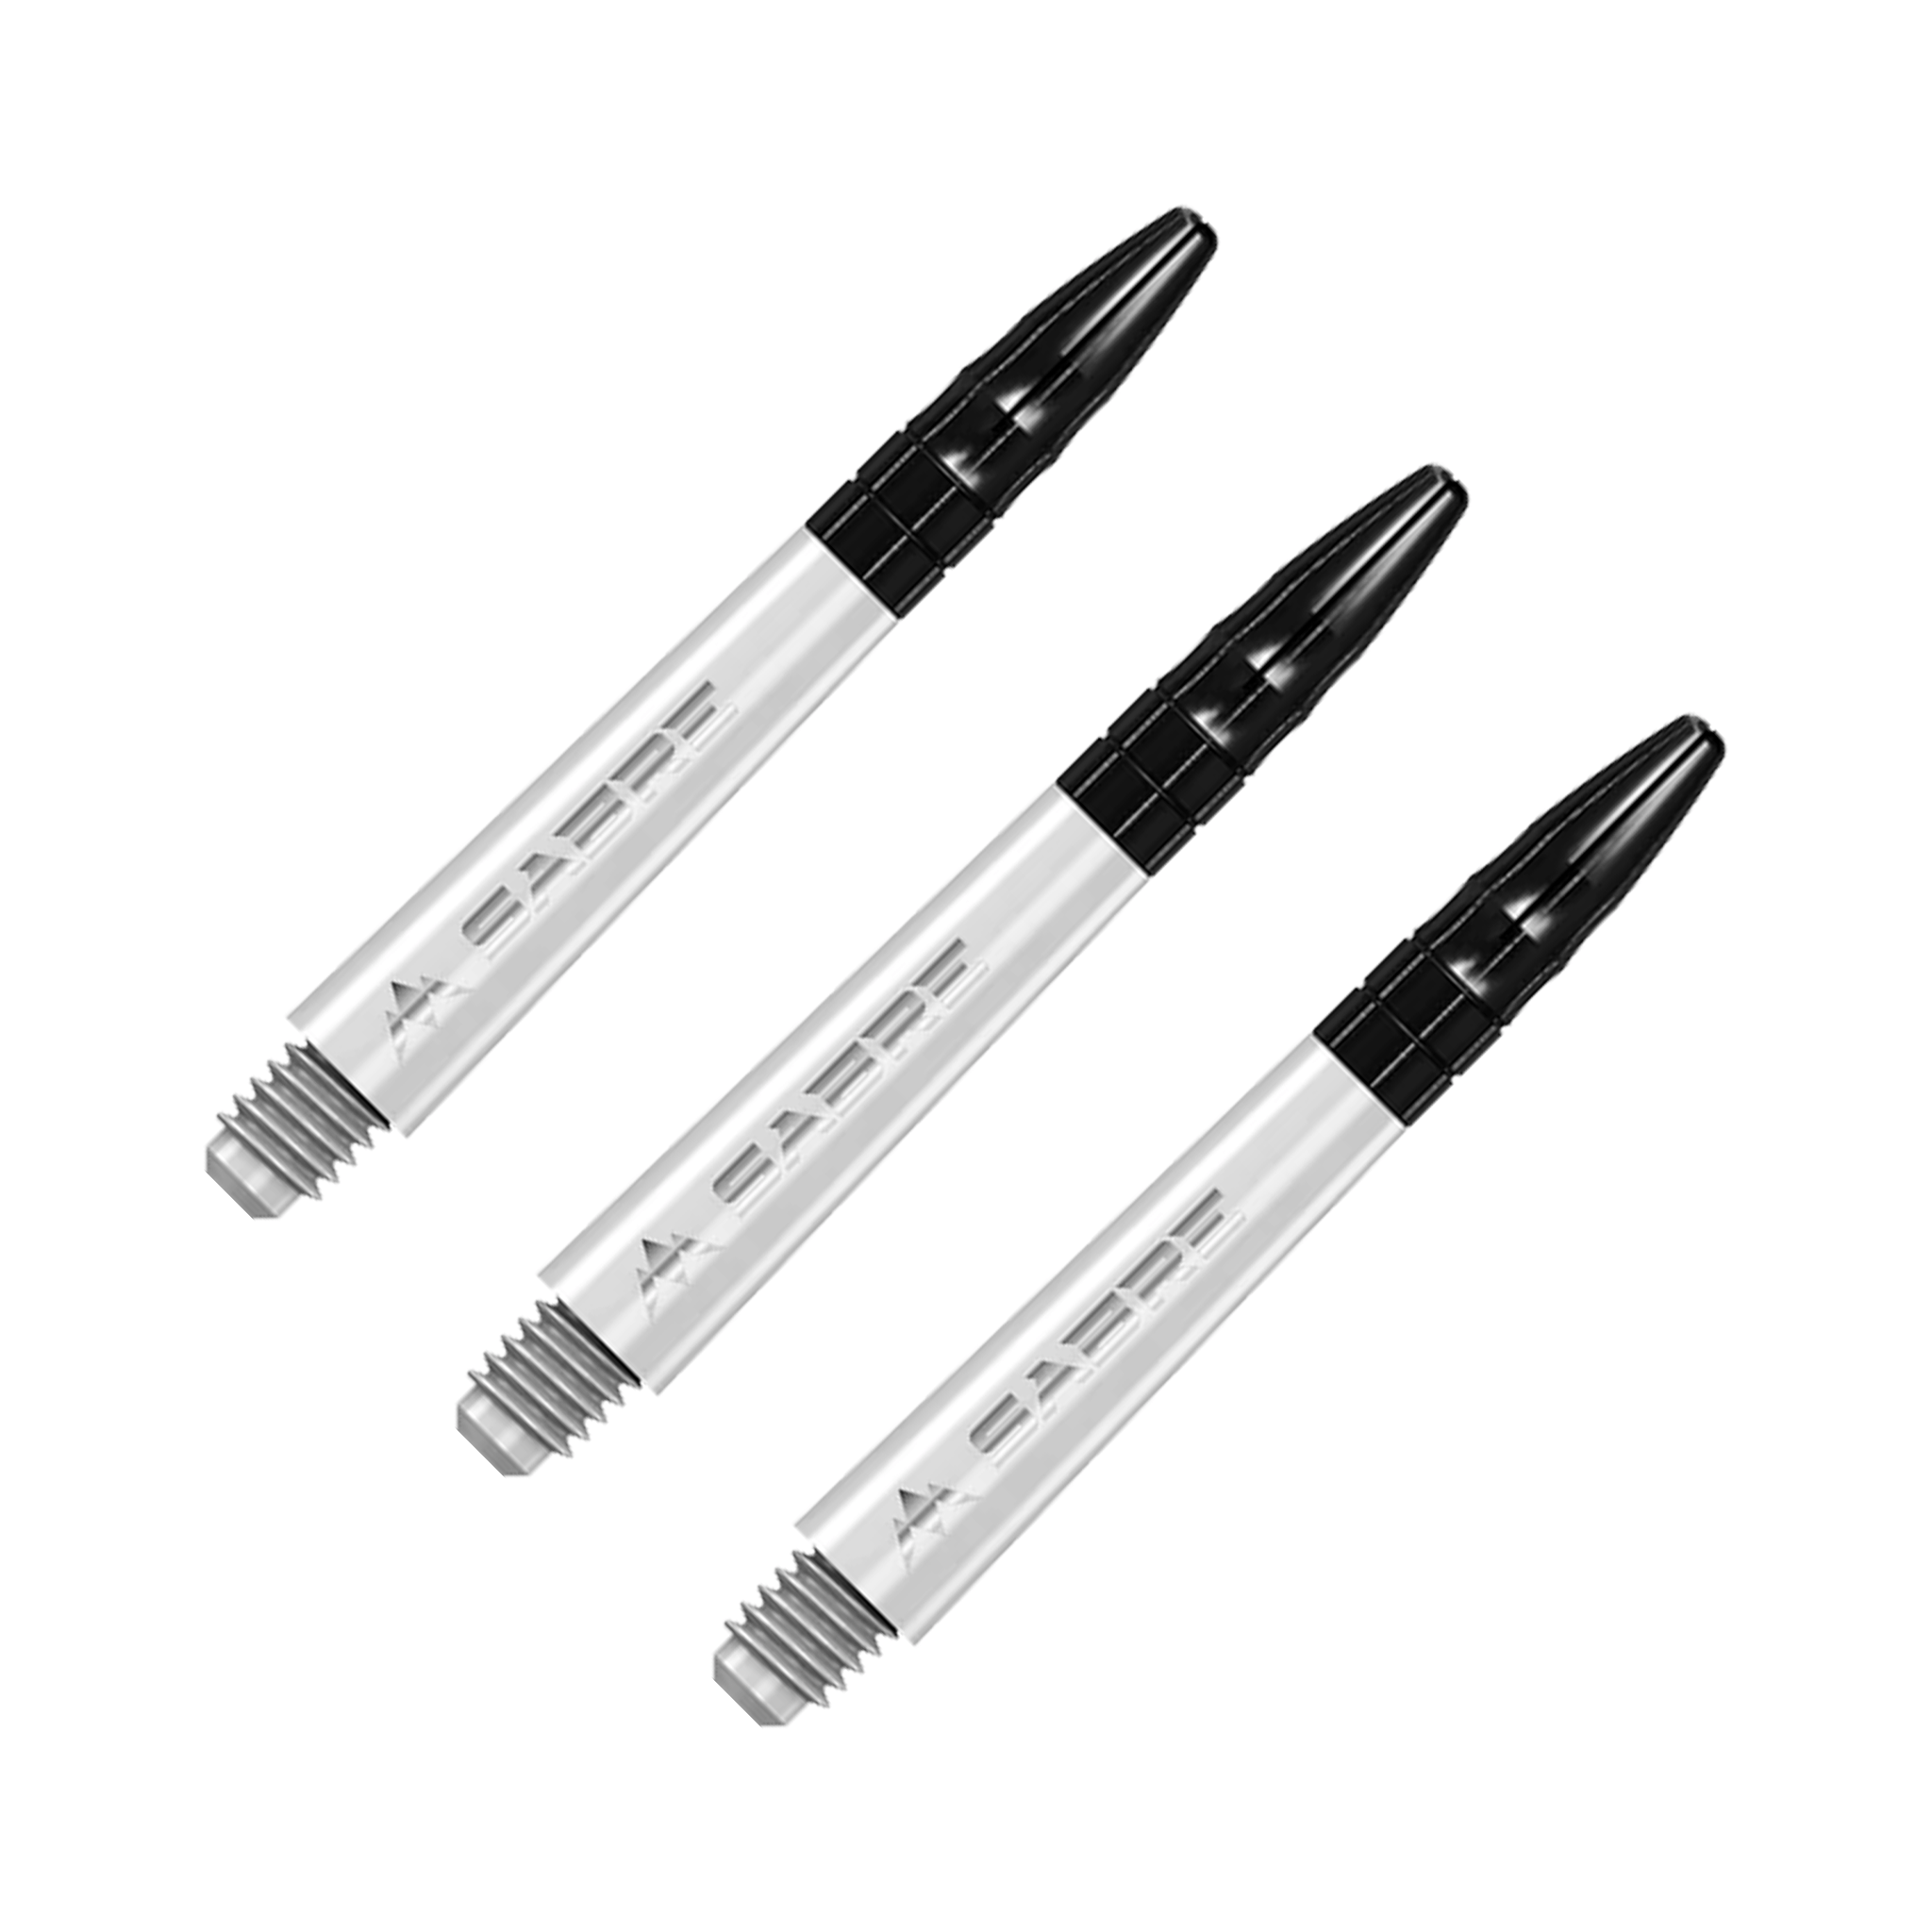 Mission Sabre - Polycarbonate Dart Shafts Midi (40mm) / White & Black Shafts